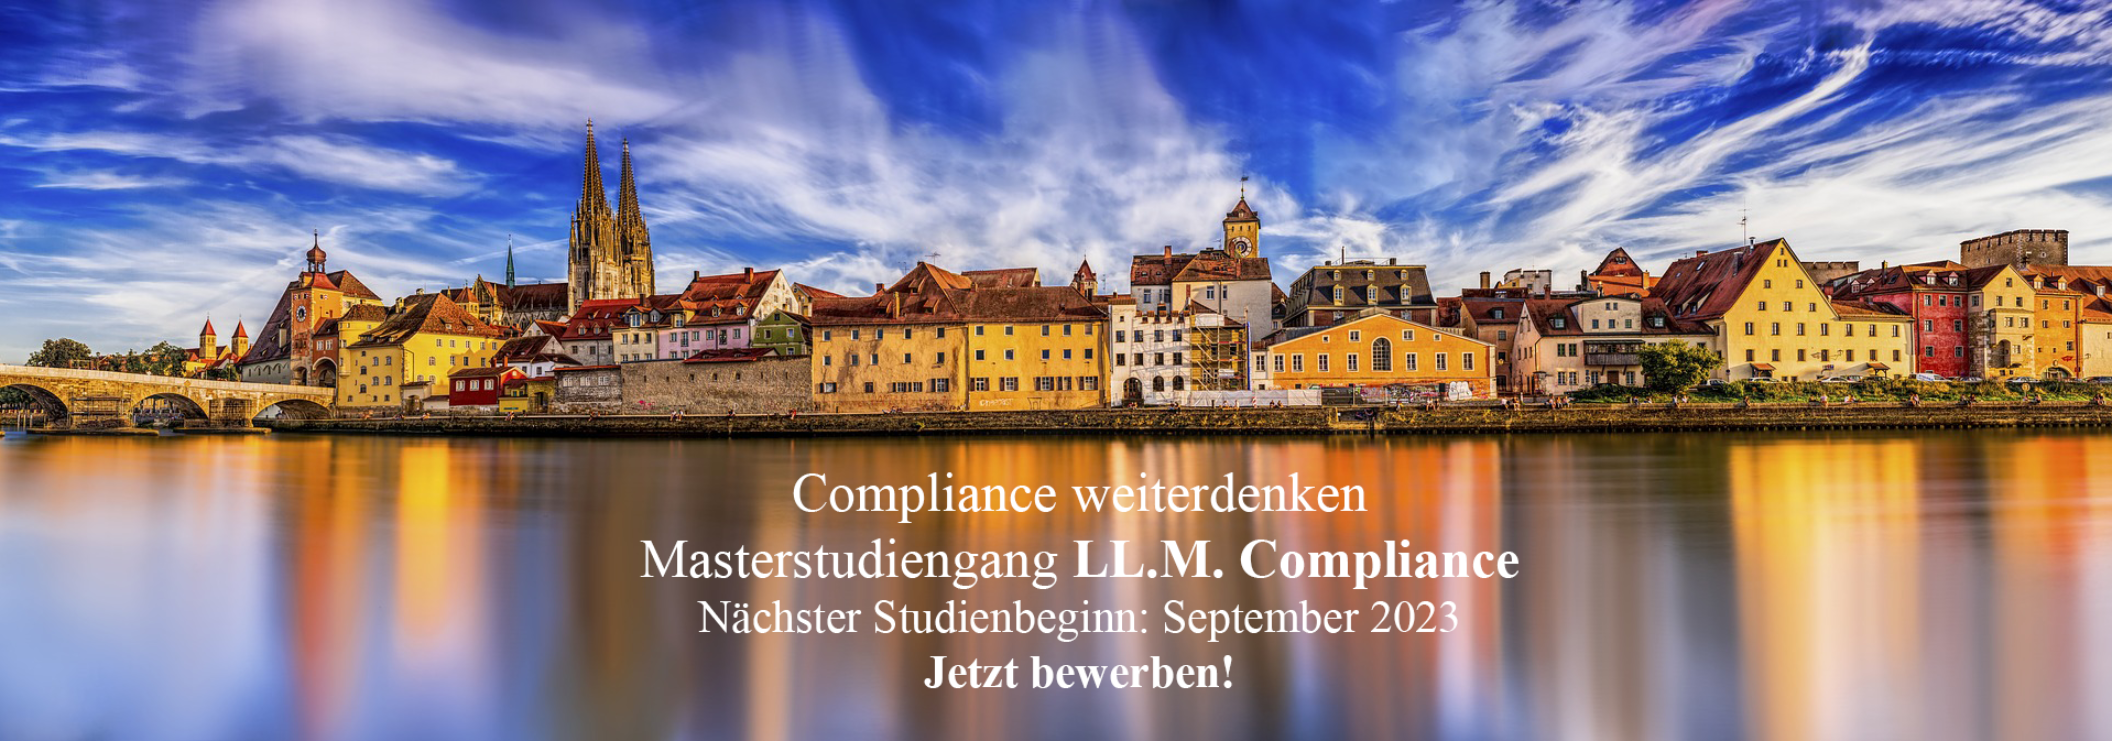 https://compliance-ur.de/wp-content/uploads/2023/02/compliance-1-2112x741.png